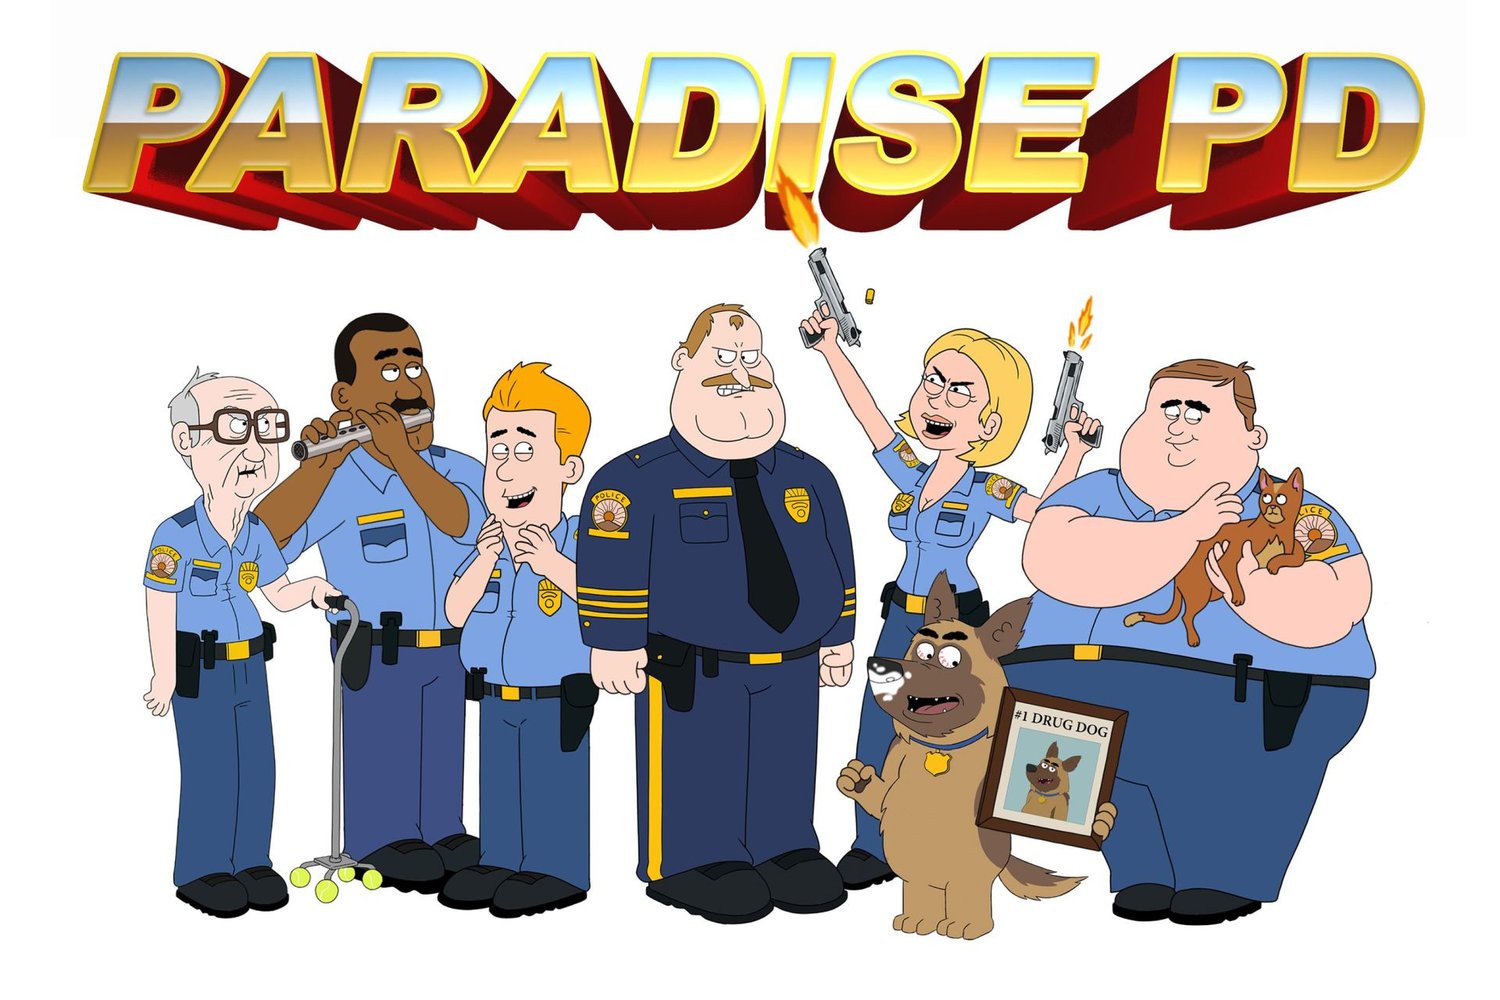 Paradise PD - Wikipedia